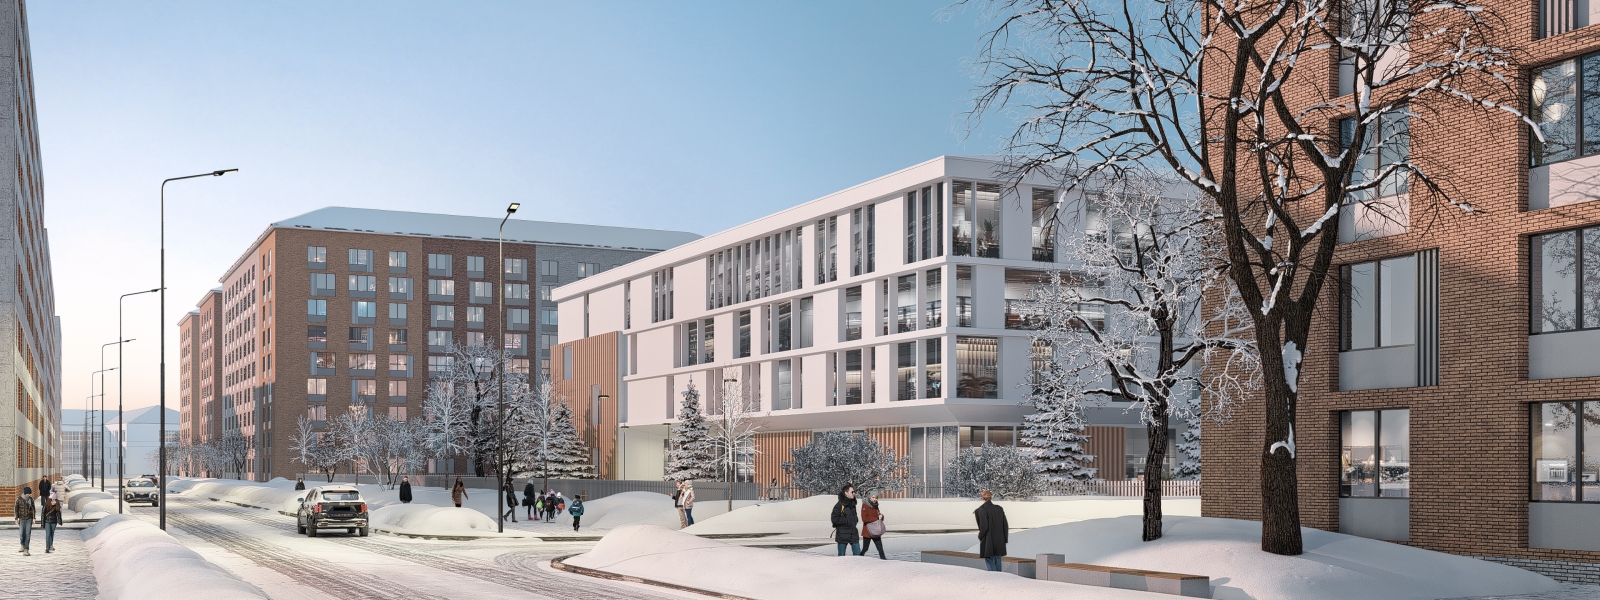 work-Архитектурно-планировочная концепция реновации города Норильска до 2035 года